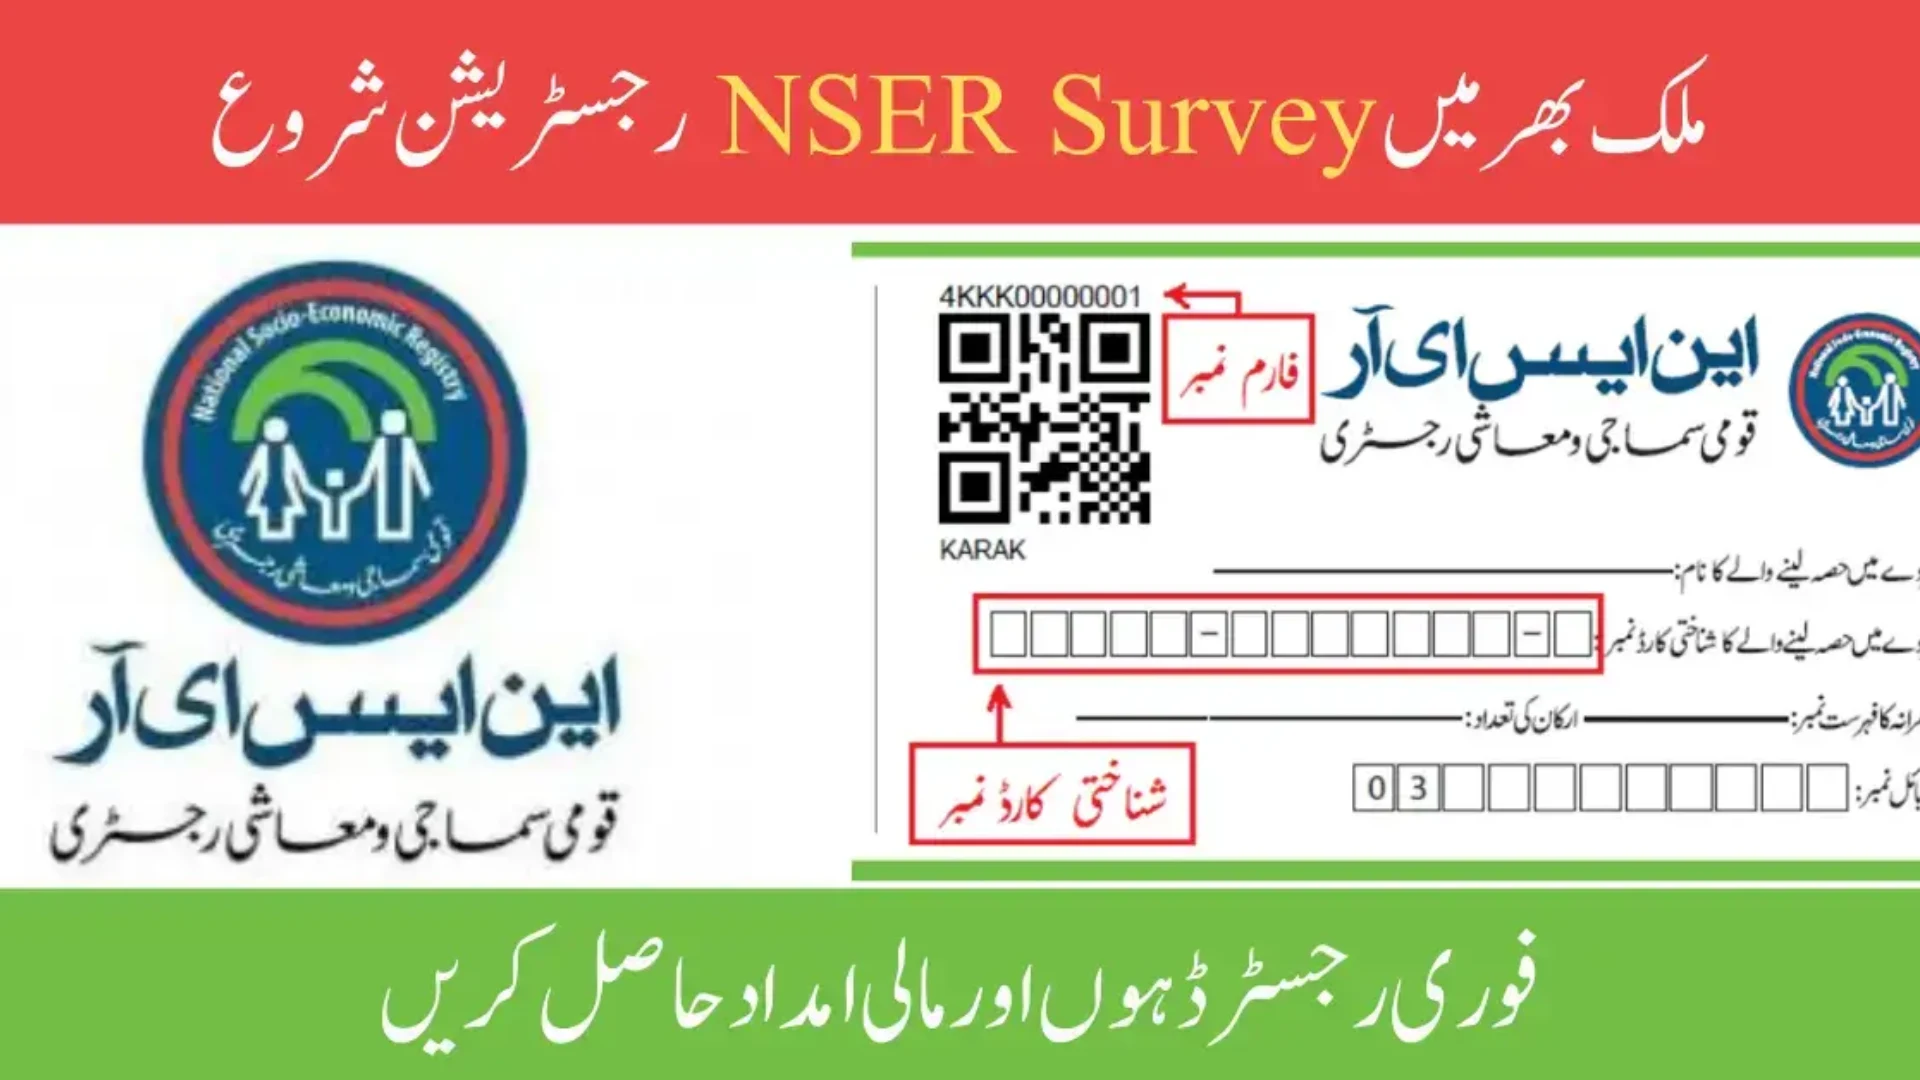 NSER Survey Online Registration